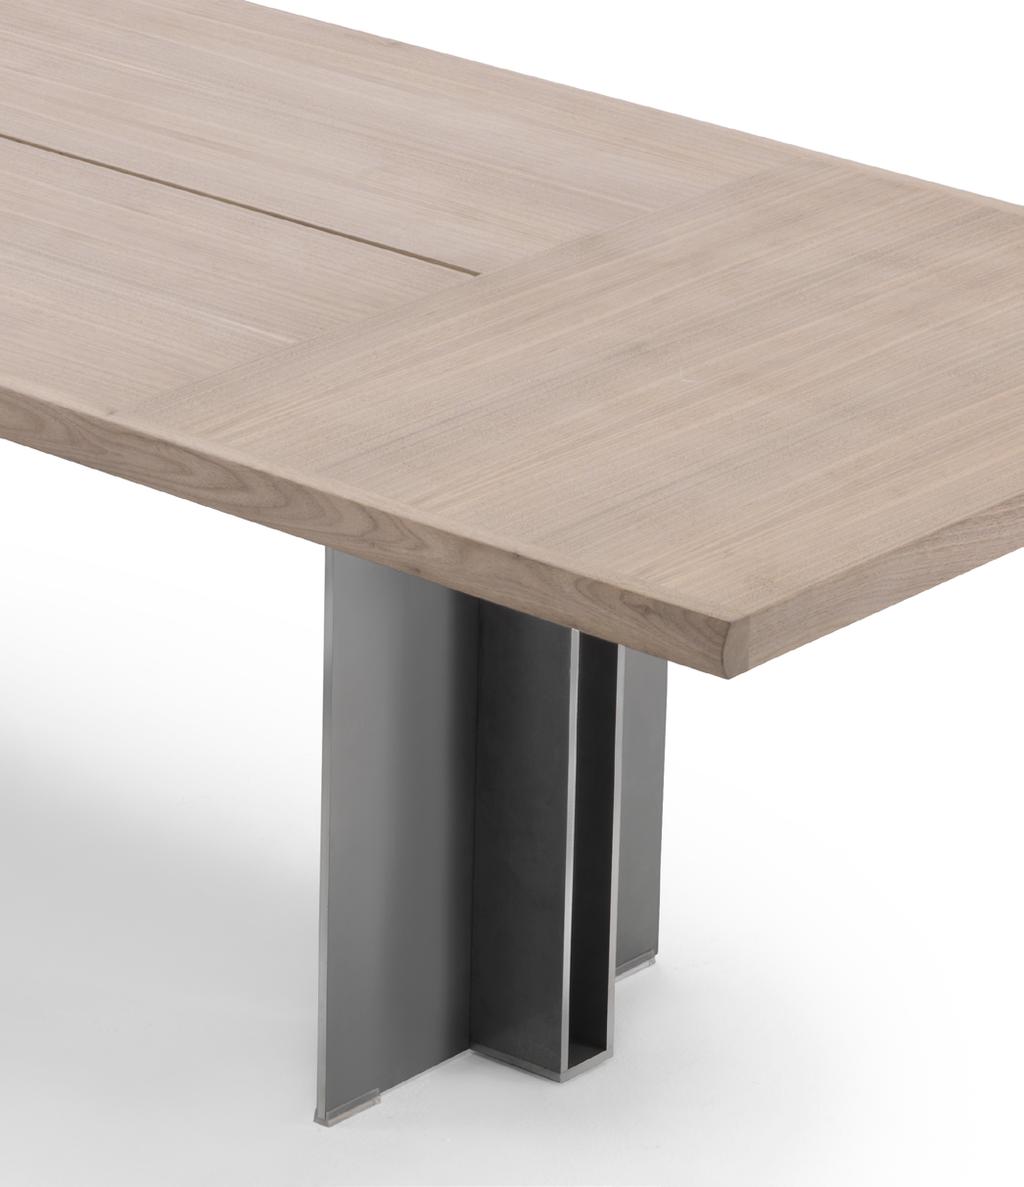 Spello Gabriele e Oscar Buratti Design Tavoli Tables Due scultoree basi in metallo verniciato conferiscono al tavolo Spello una marcata personalità.